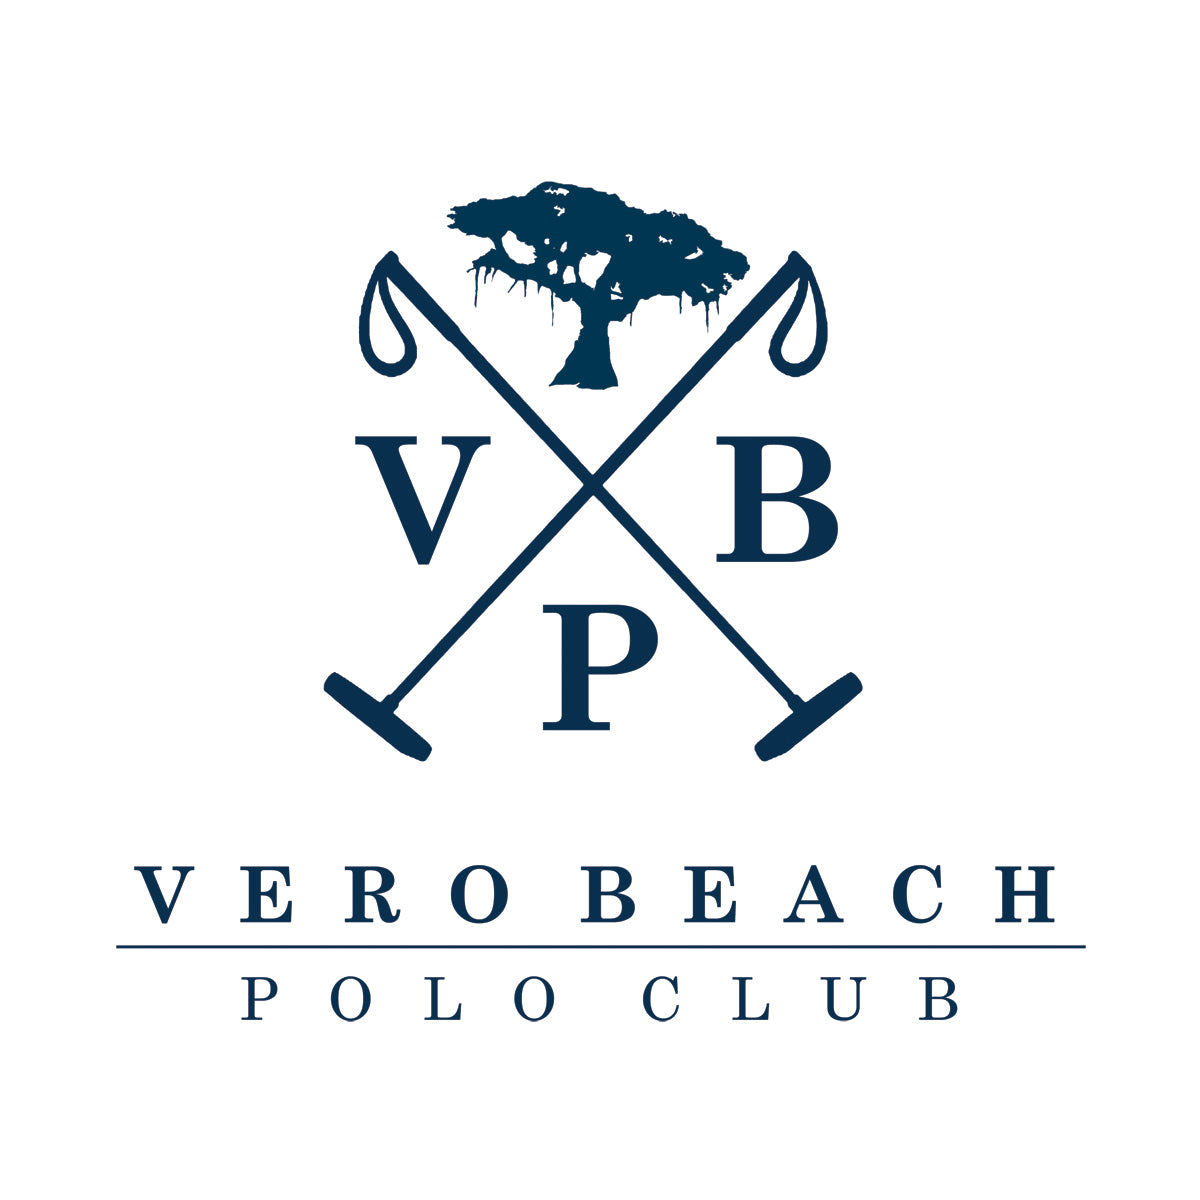 The Vero Beach Polo Club